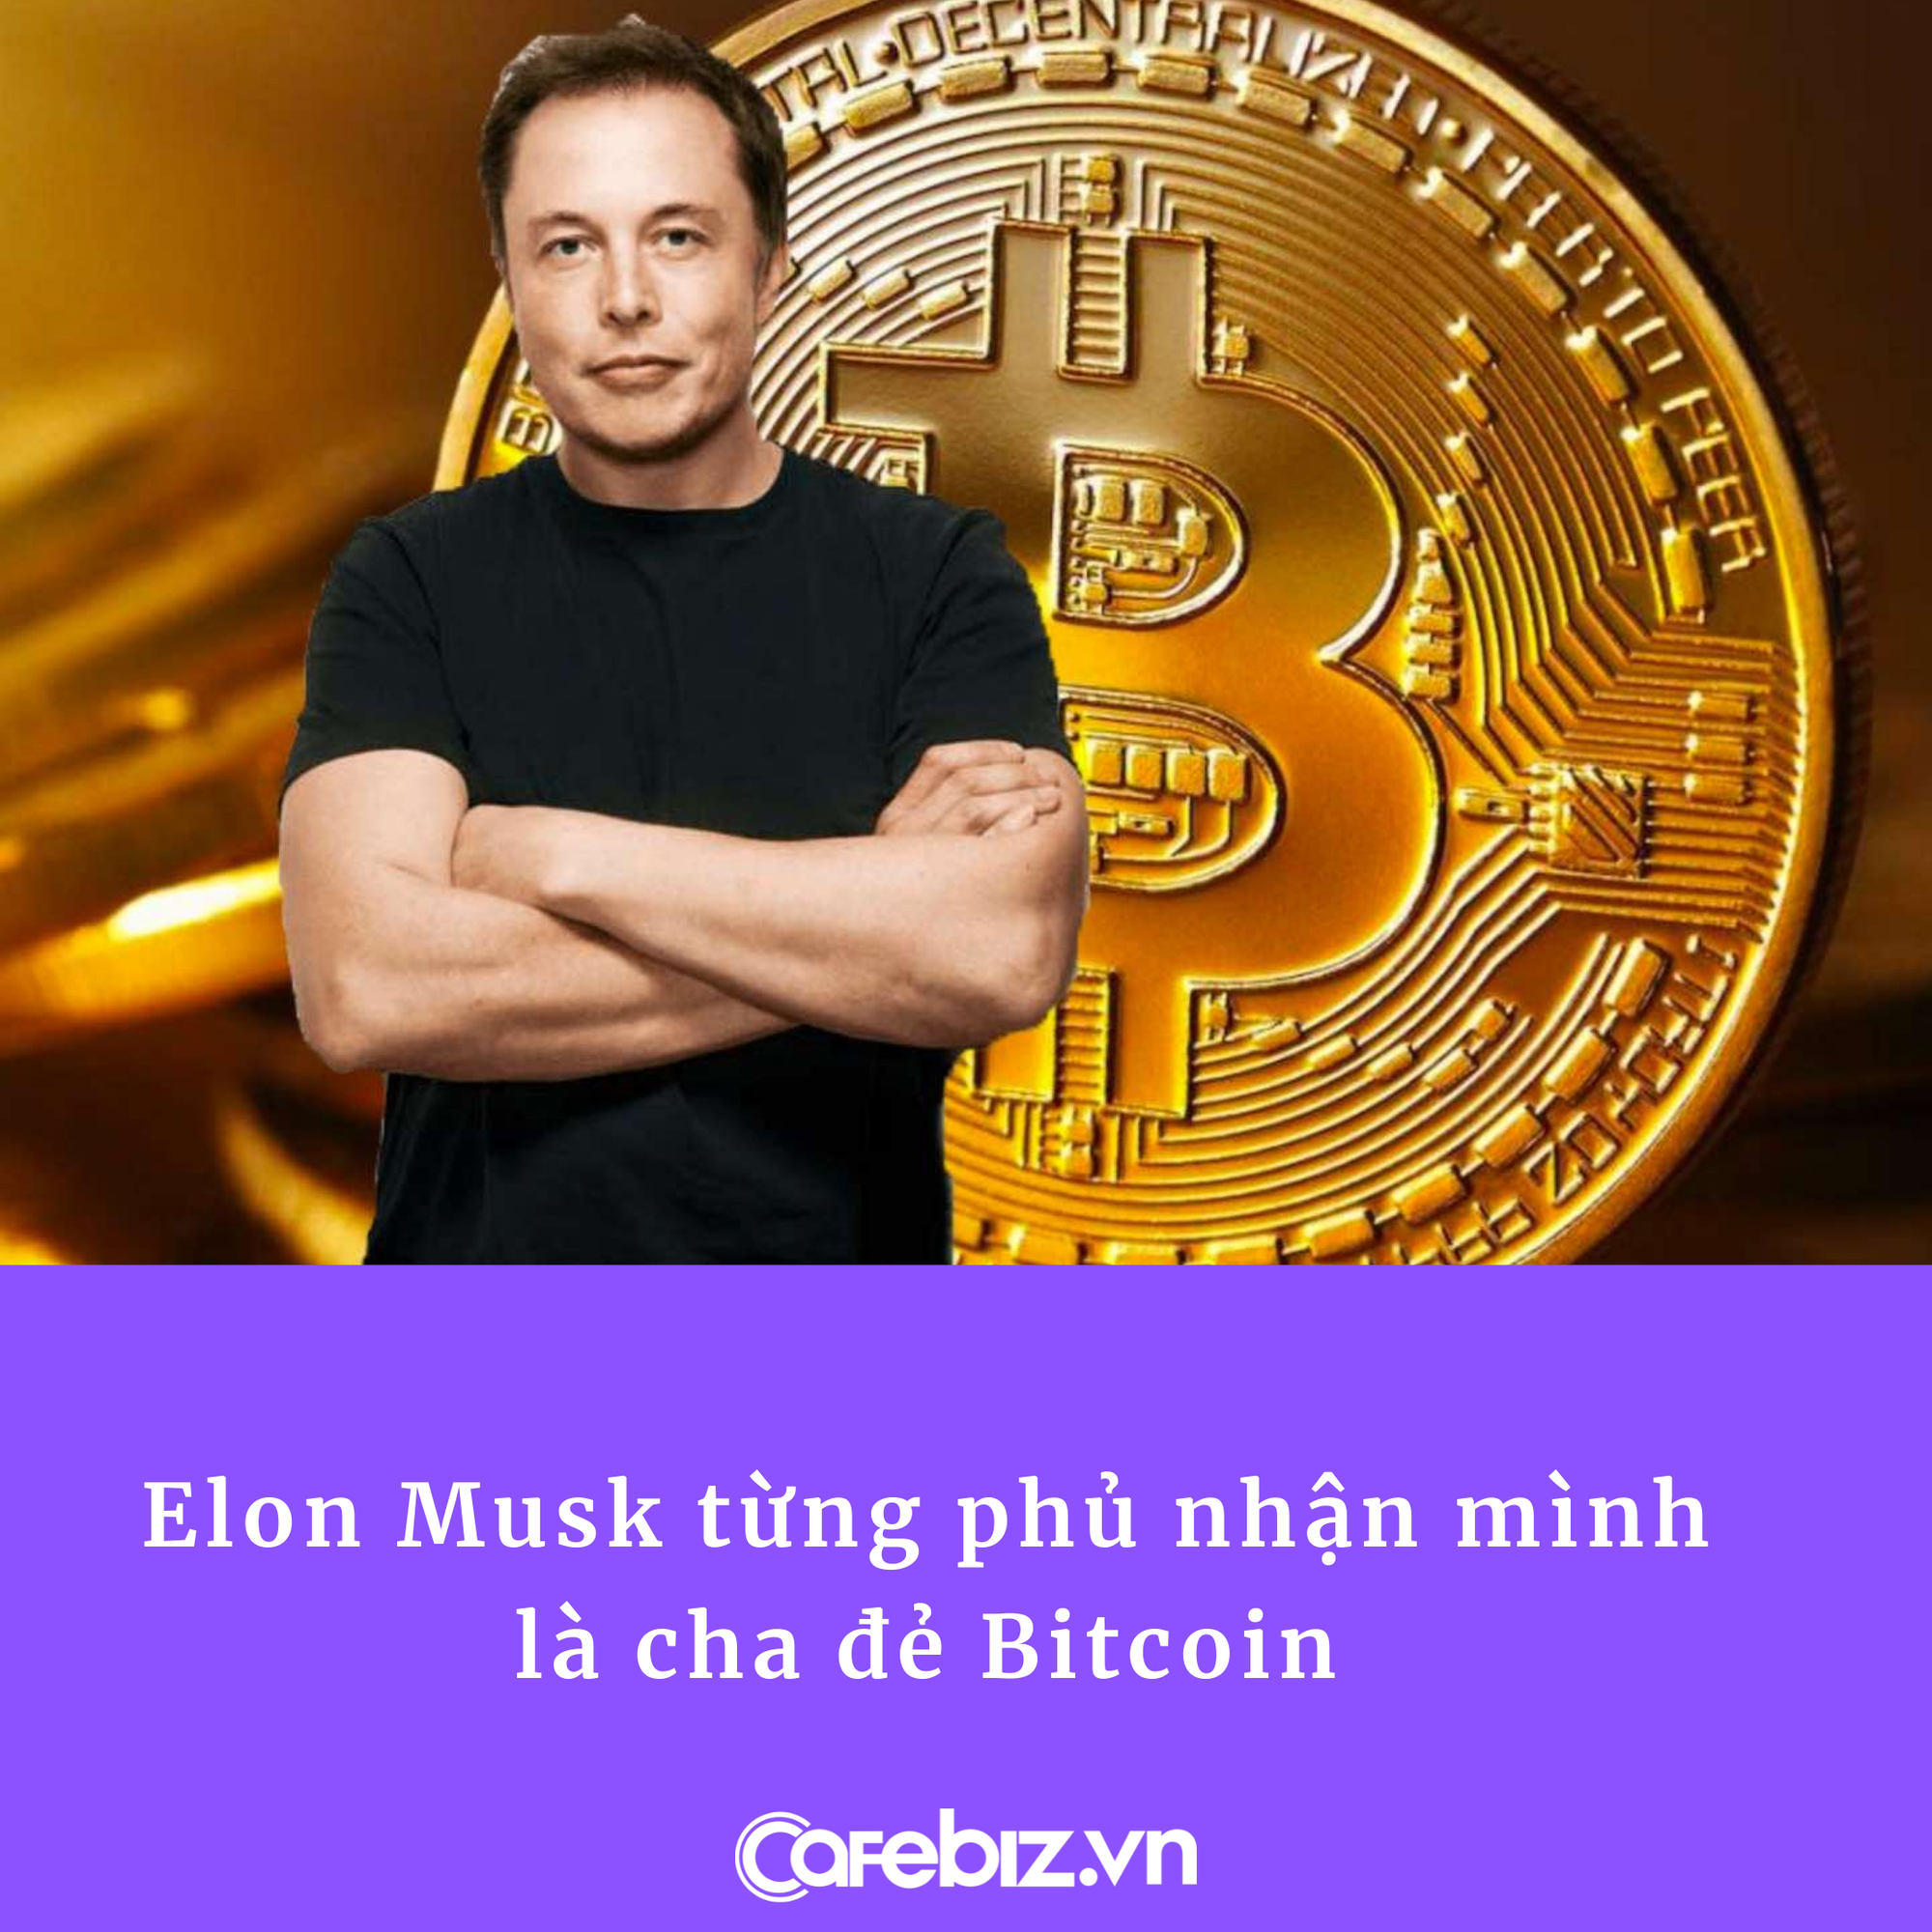 Elon Musk ngầm ám chỉ danh tính cha đẻ Bitcoin, hàng loạt ông lớn công nghệ bị bêu tên - Ảnh 2.